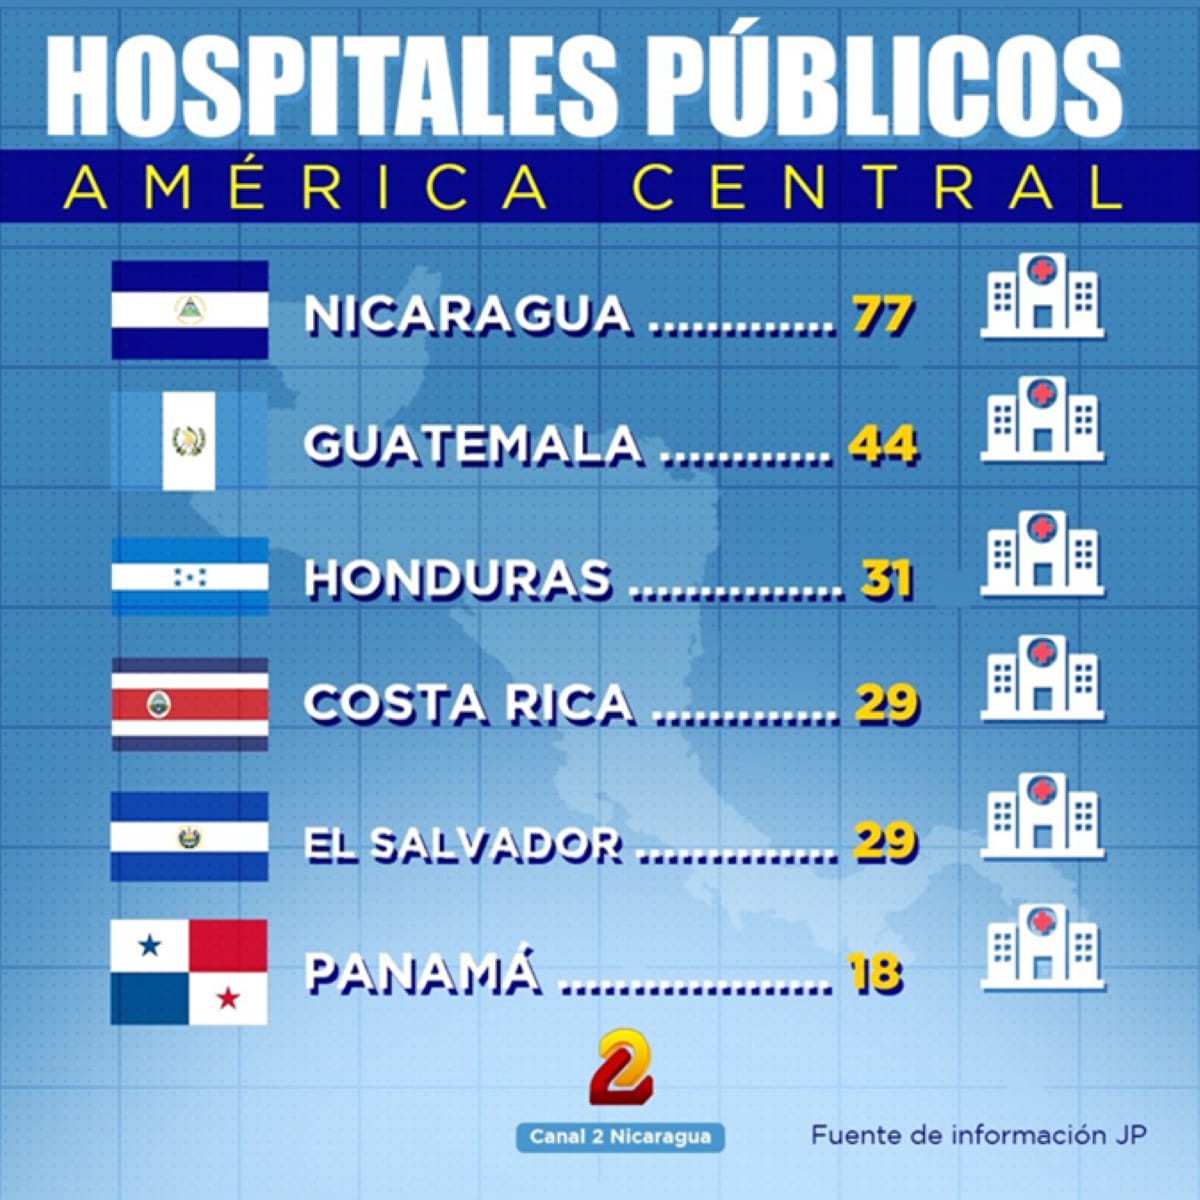 Nicaragua tiene, con diferencia, la mayor cantidad de hospitalespúblicos de Centroamérica